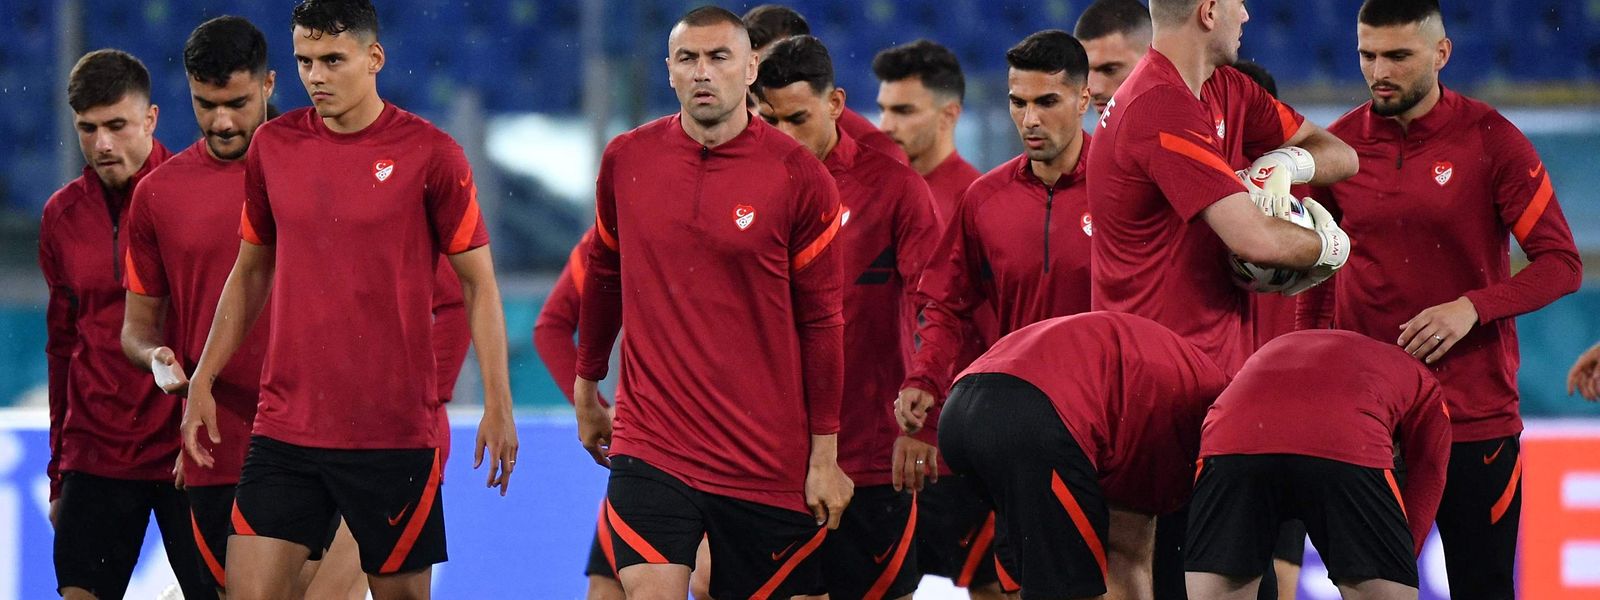 Les Turcs de Burak Yilmaz affrontent vendredi soir les Italiens, favoris du groupe A. Les deux équipes, absentes lors du Mondial 2018, ont soif de revanche.